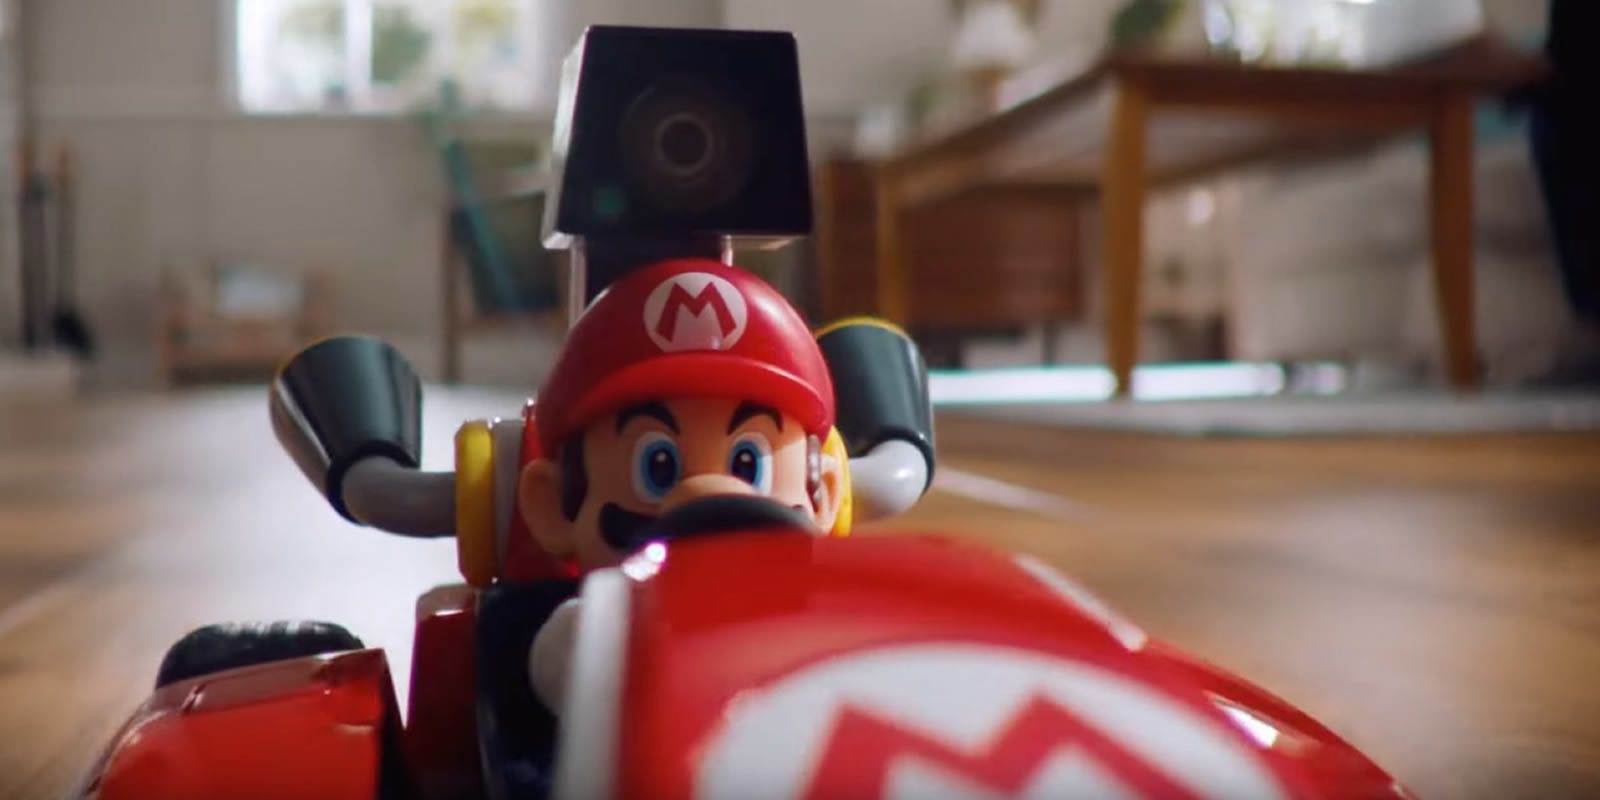 'Mario Kart' sale de la consola y se convierte en realidad con 'Mario Kart Live: Home Circuit'